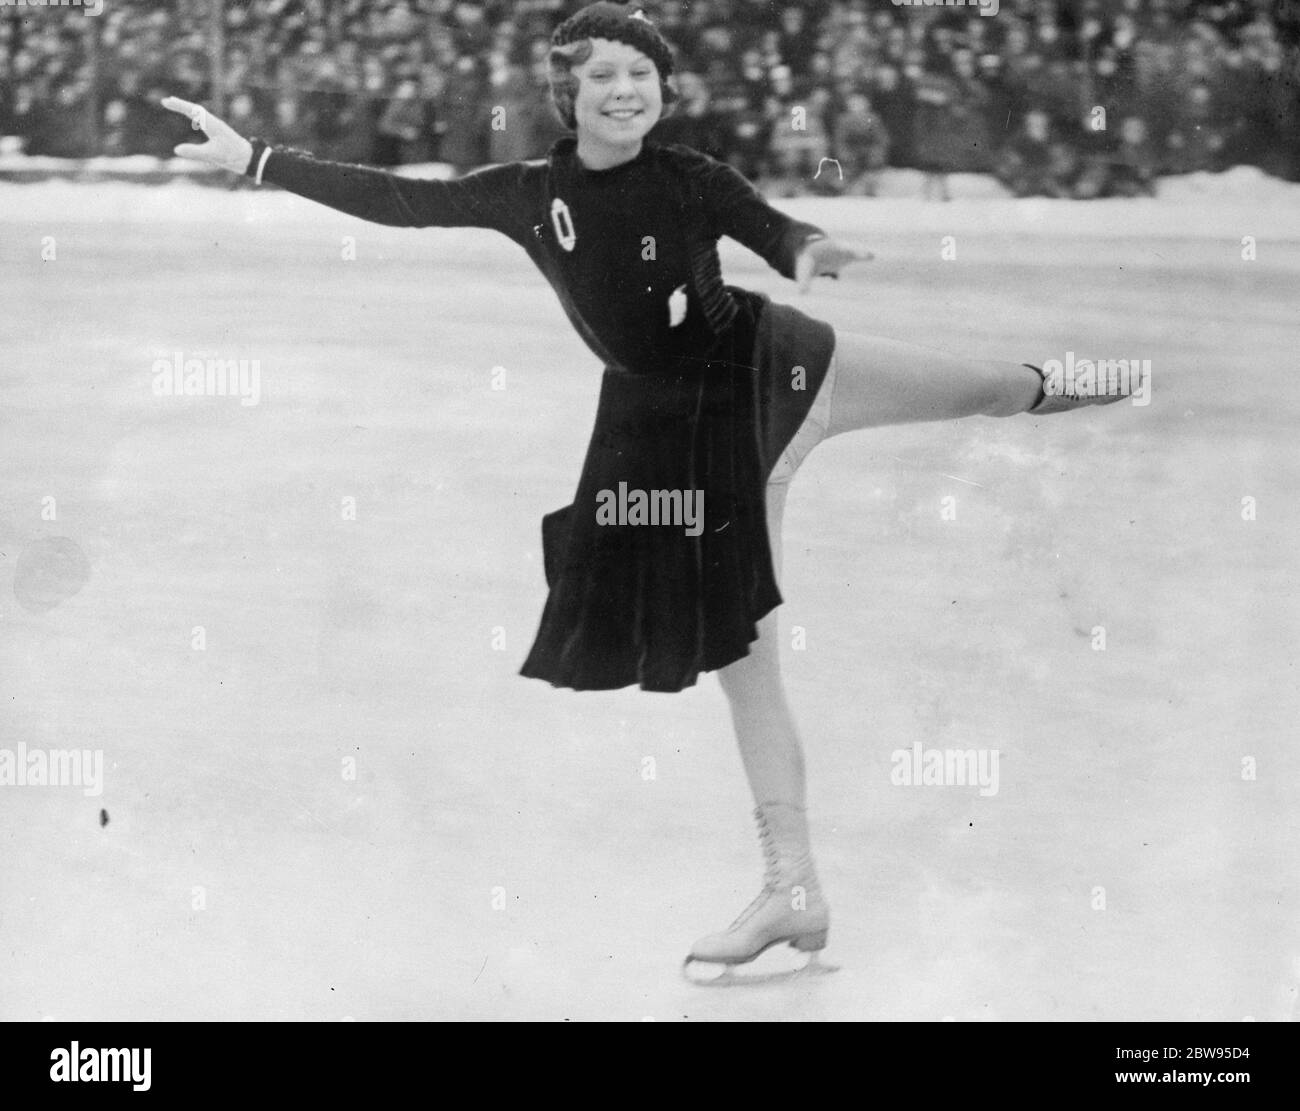 Eiskunstlauf-Weltmeisterschaften in Stockholm eröffnet. Die Eiskunstlauf-Weltmeisterschaften wurden im Eispalast in Stockholm eröffnet, als Fraulein Sonja Henie ihren Weltmeistertitel behielt. Sonja Henie, die Inhaberin der Meisterschaft, in Aktion während der Wettbewerbe. 13 Februar 1933 Stockfoto